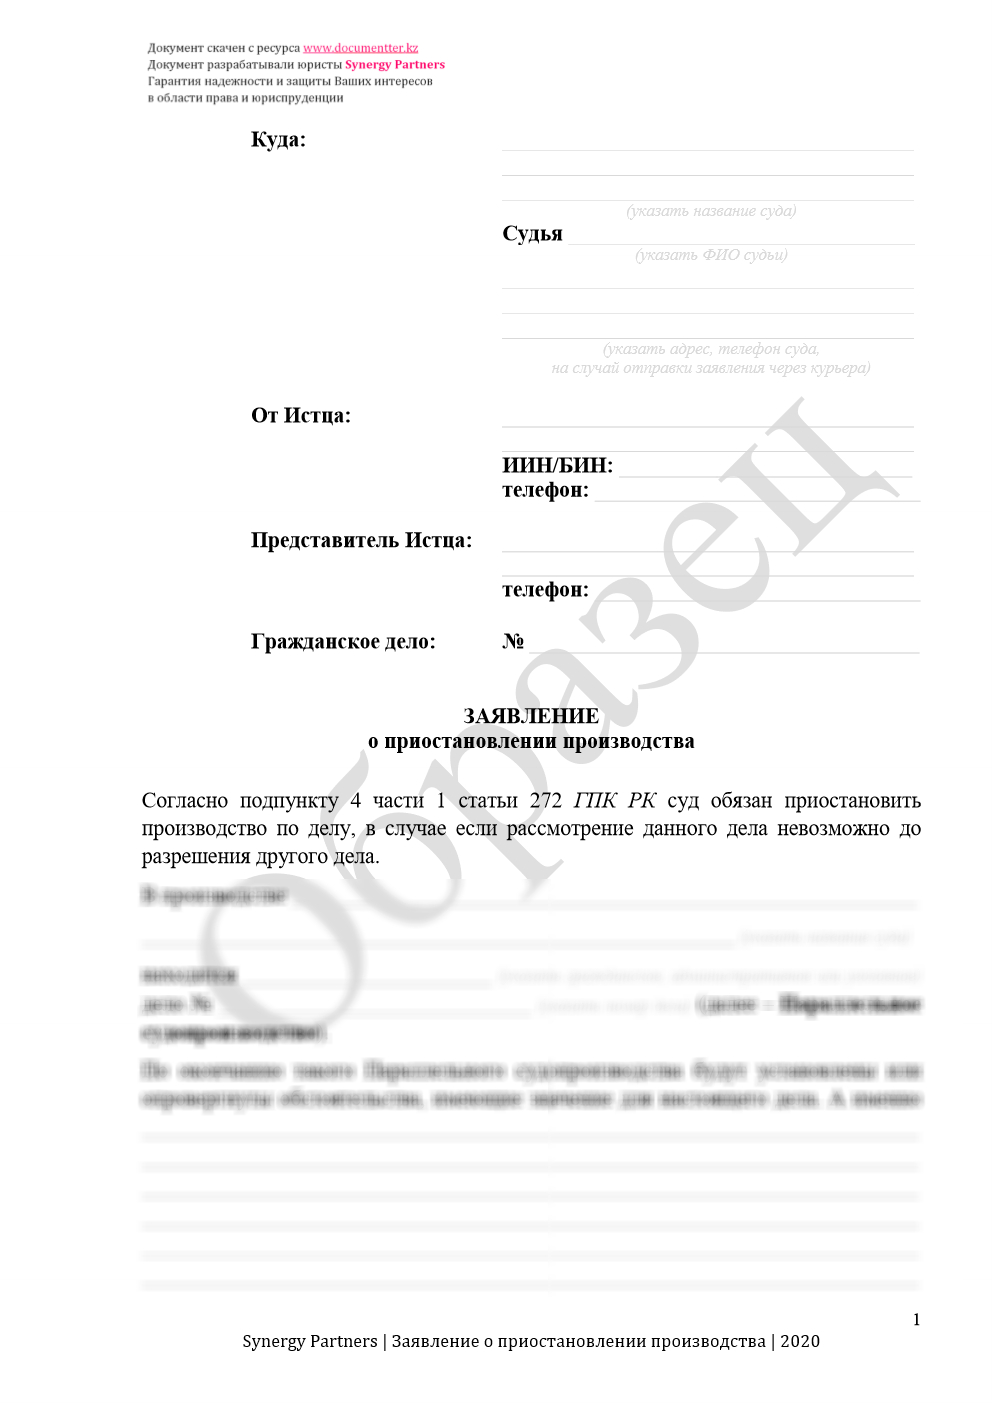 Заявление о приостановлении производства при параллельных делах 6 | documentter.kz в Казахстане 